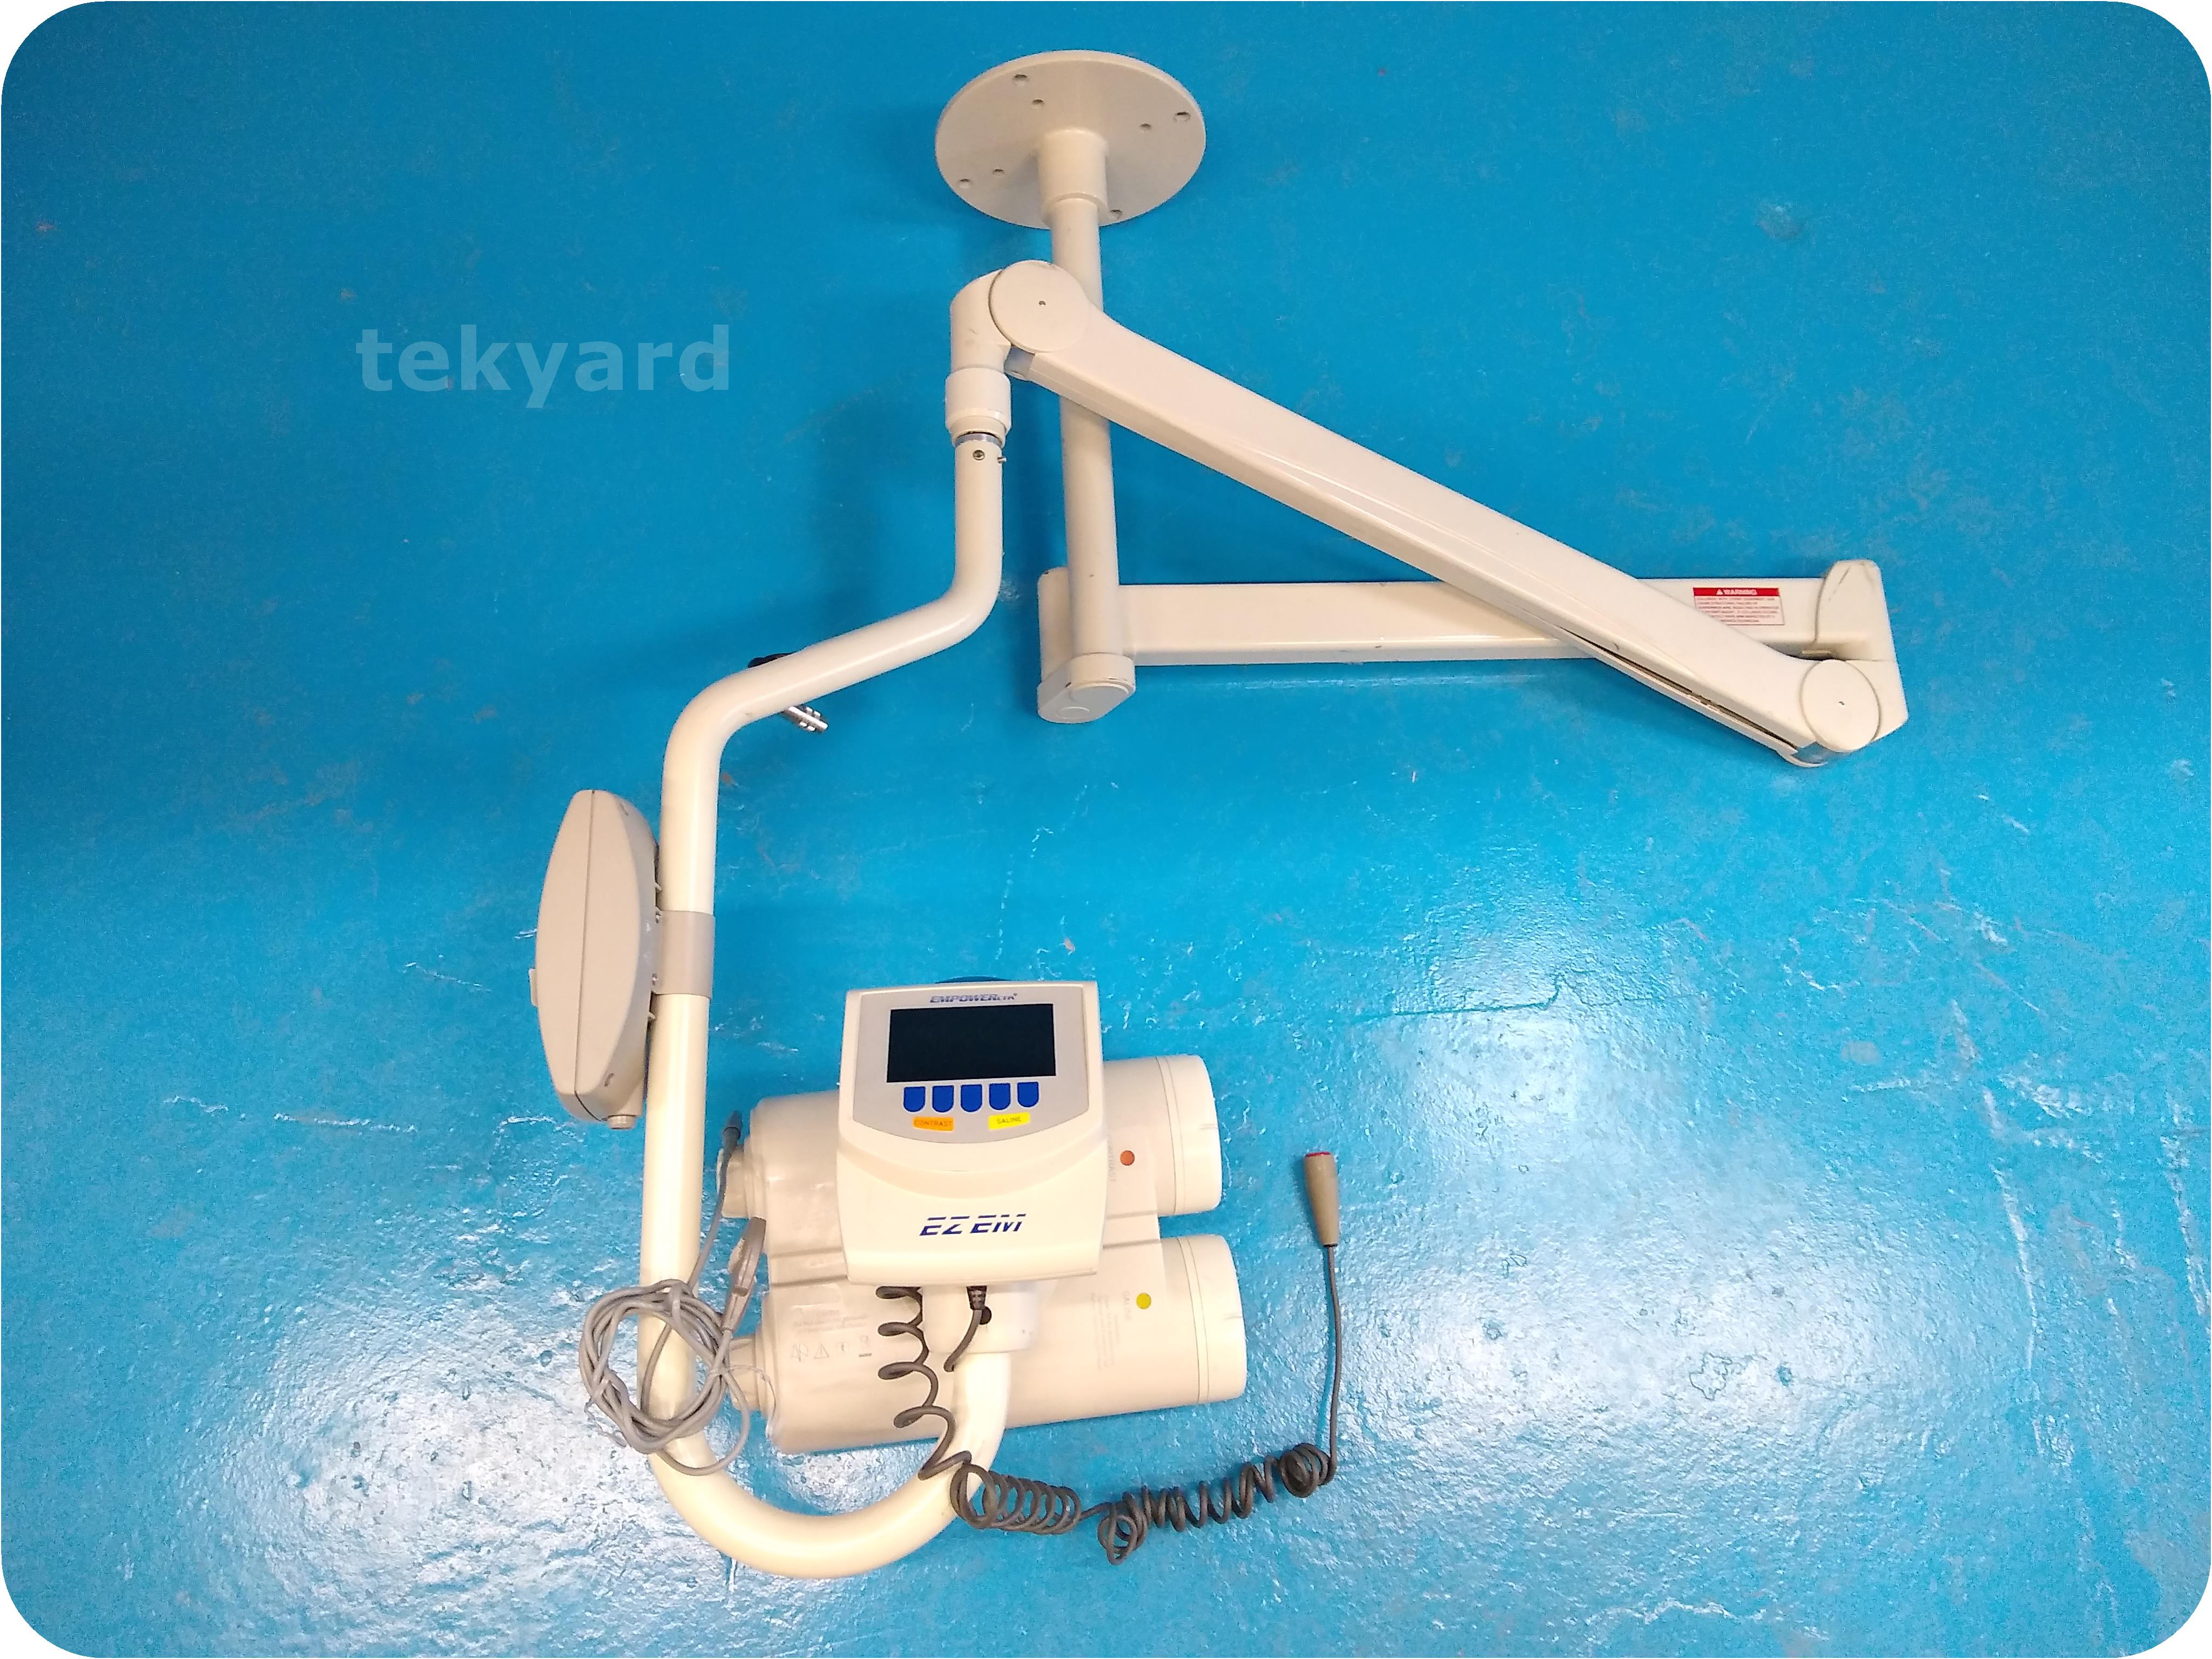 tekyard, LLC. - 213166-E-Z-EM 9930 Dual Head CT Injector